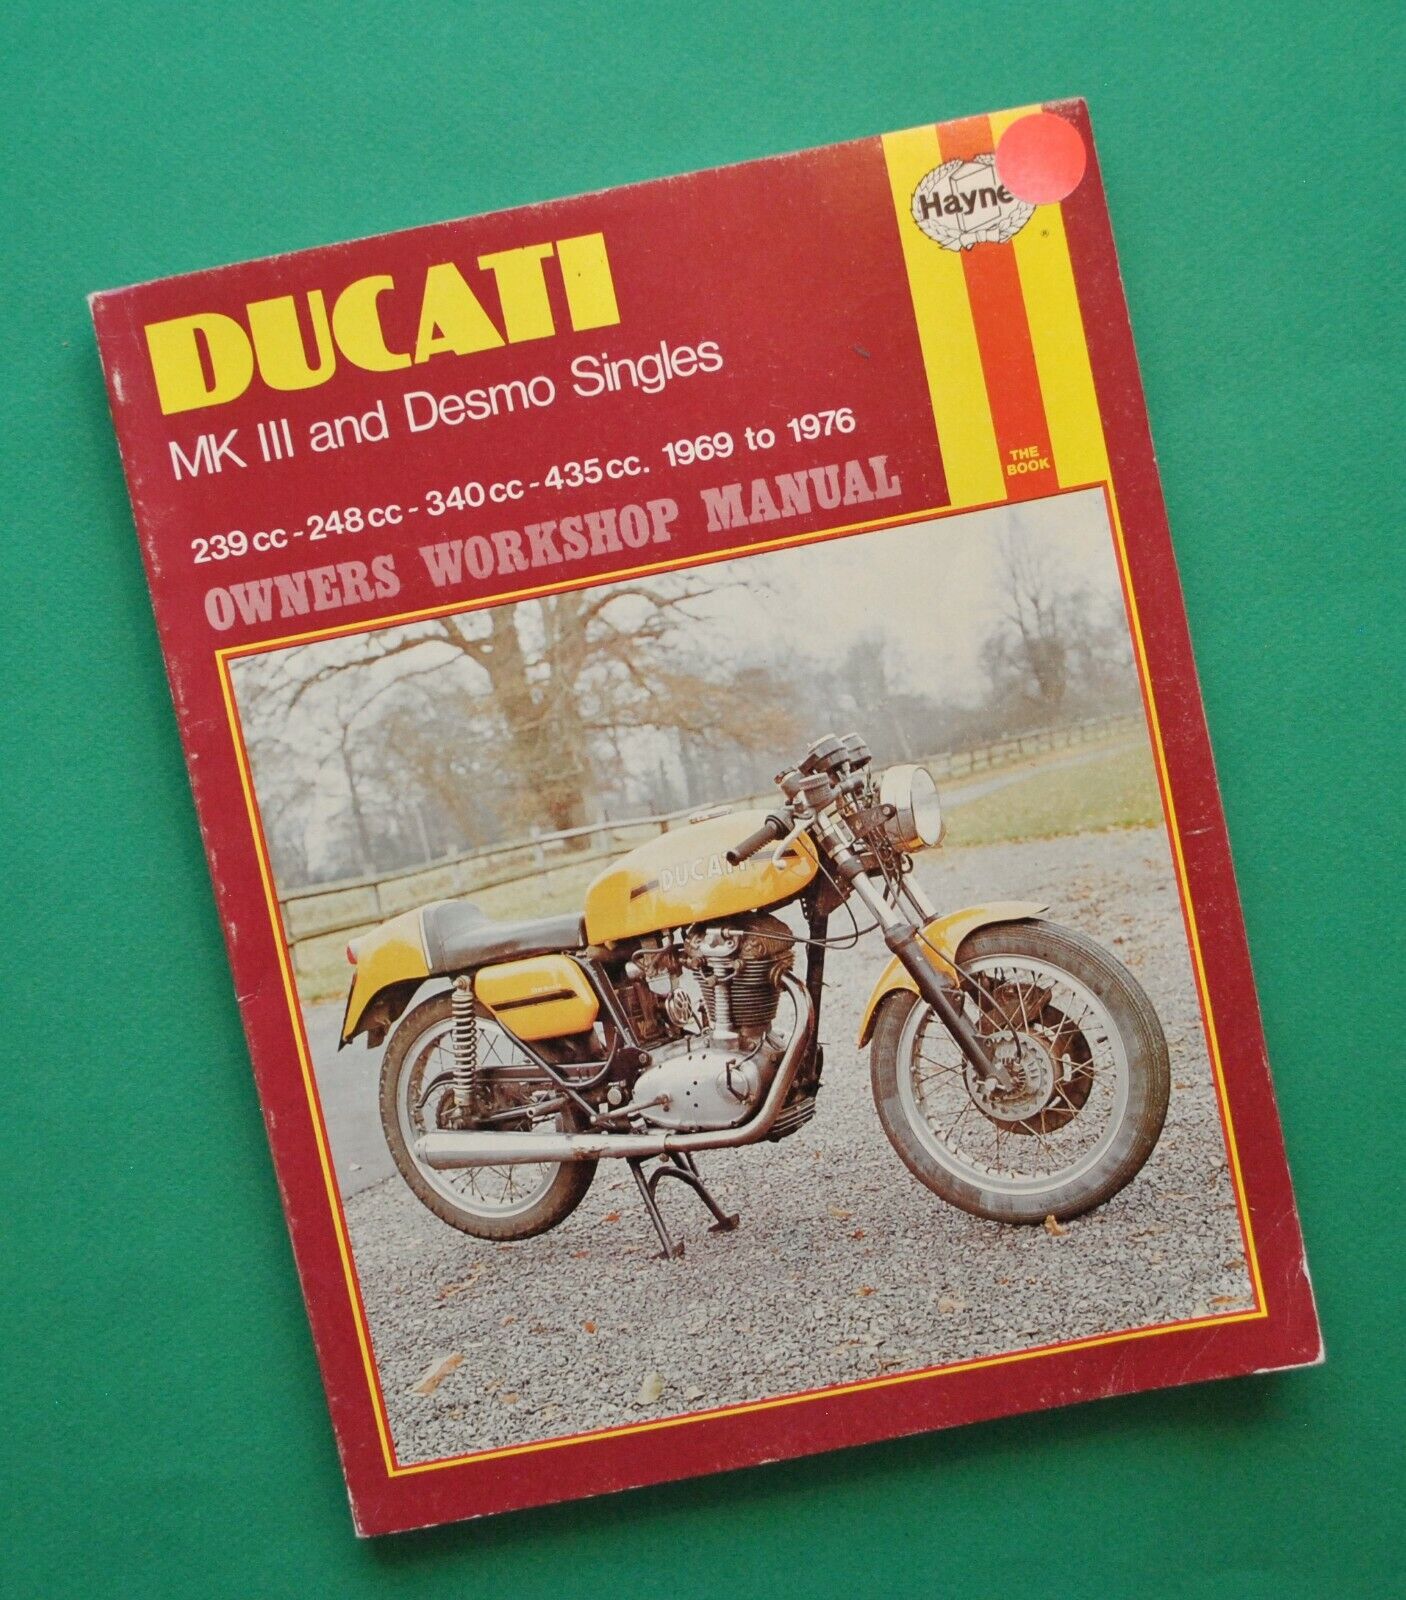 1969-76 Ducati Motorcycle Service Manual Book Mk III Desmo Singles 250 350 450cc